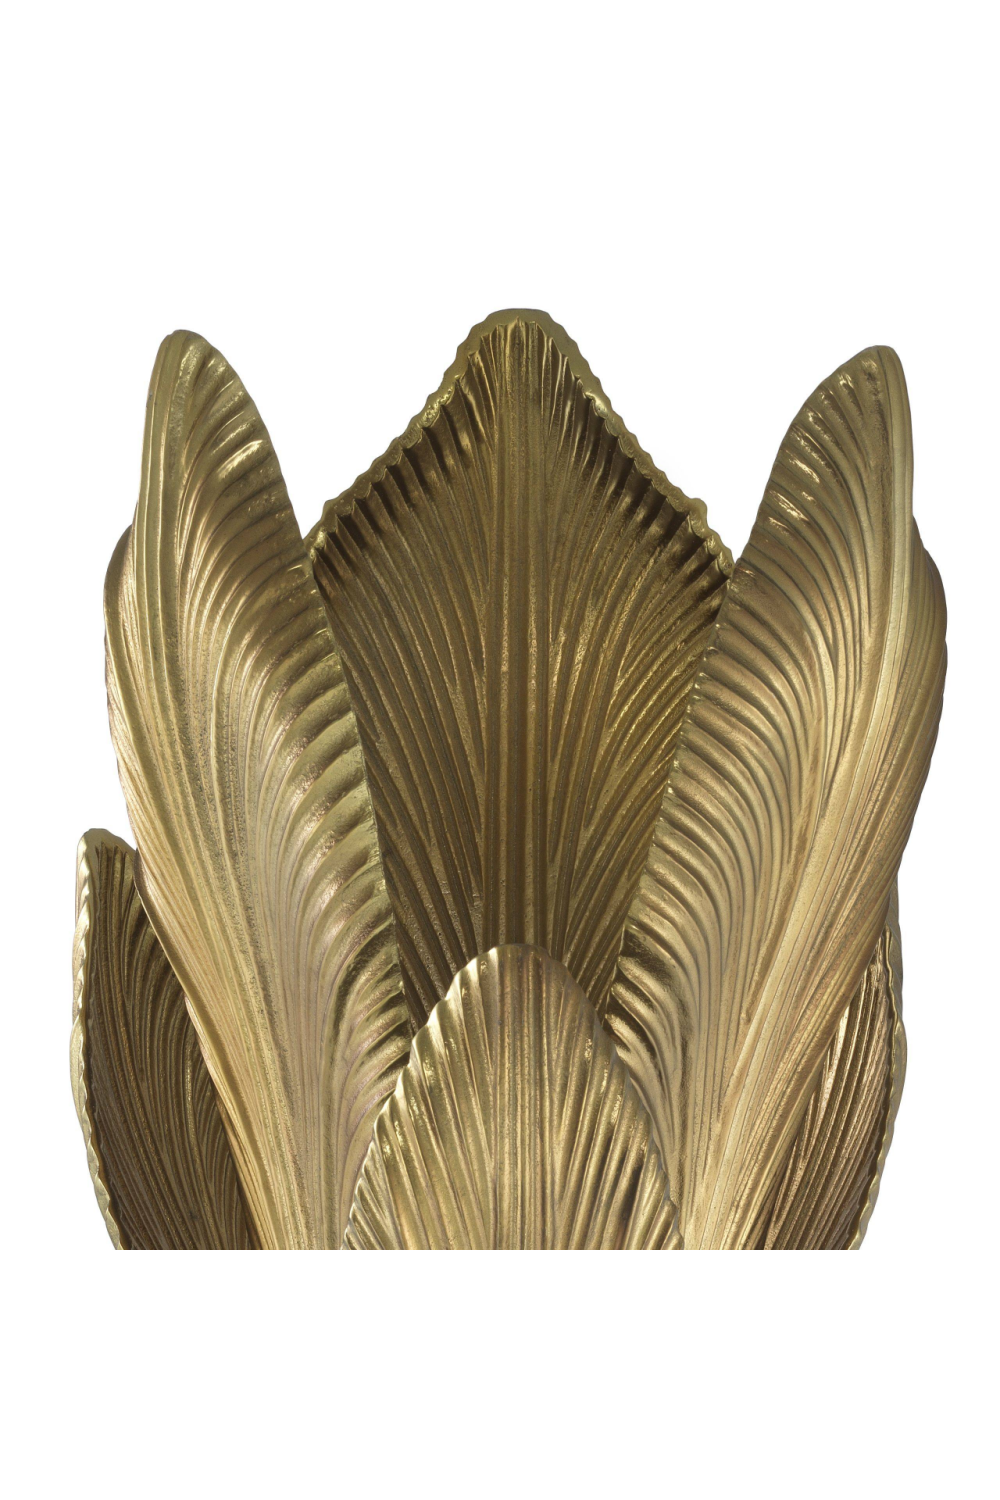 Gold Palm Table Lamp | Eichholtz Maui | #1 Eichholtz Retailer